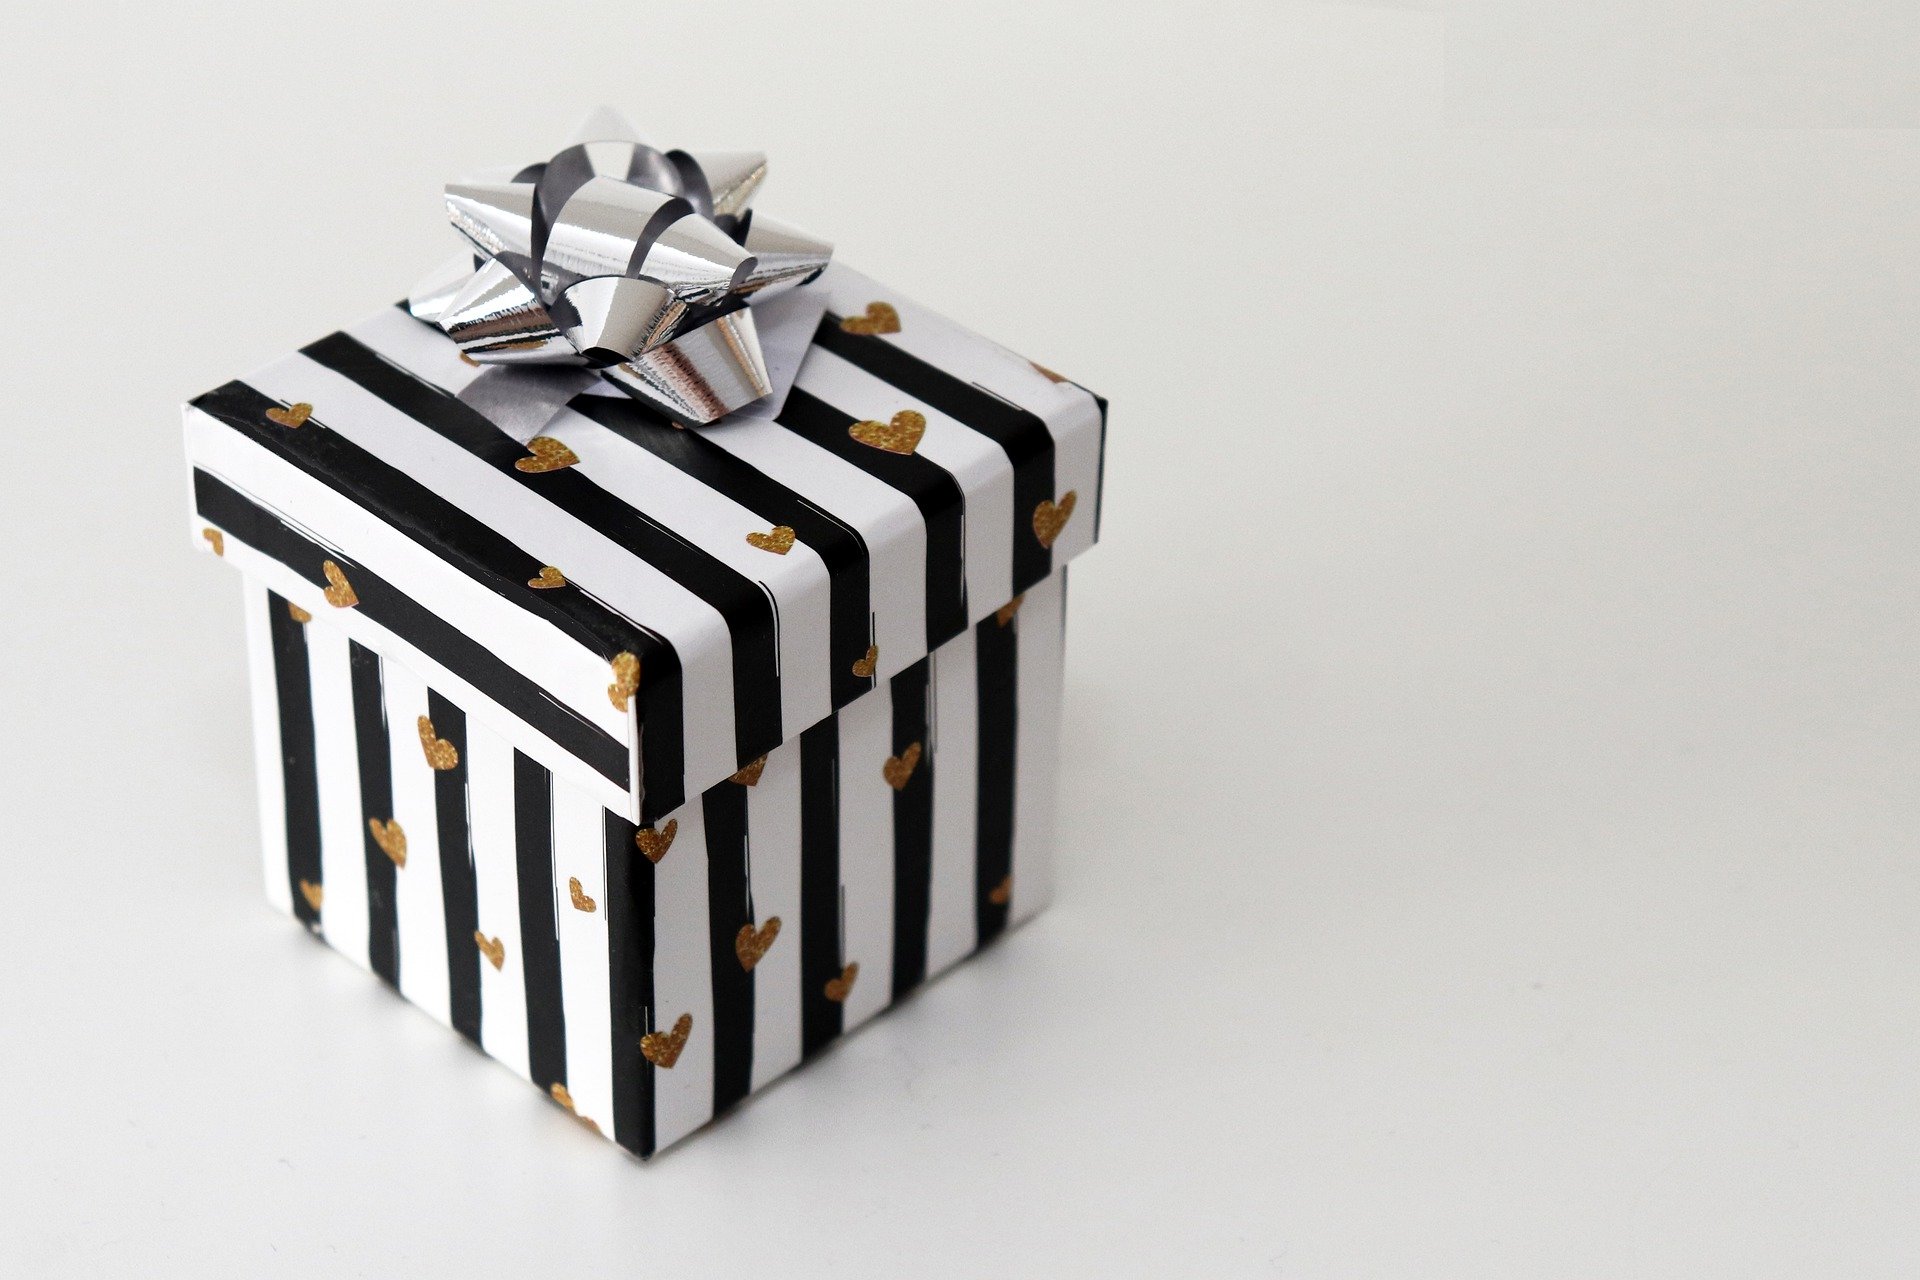 המתנות הכי מקוריות שיש: 5 קורסים שאפשר לתת במתנה לחתן הטרי